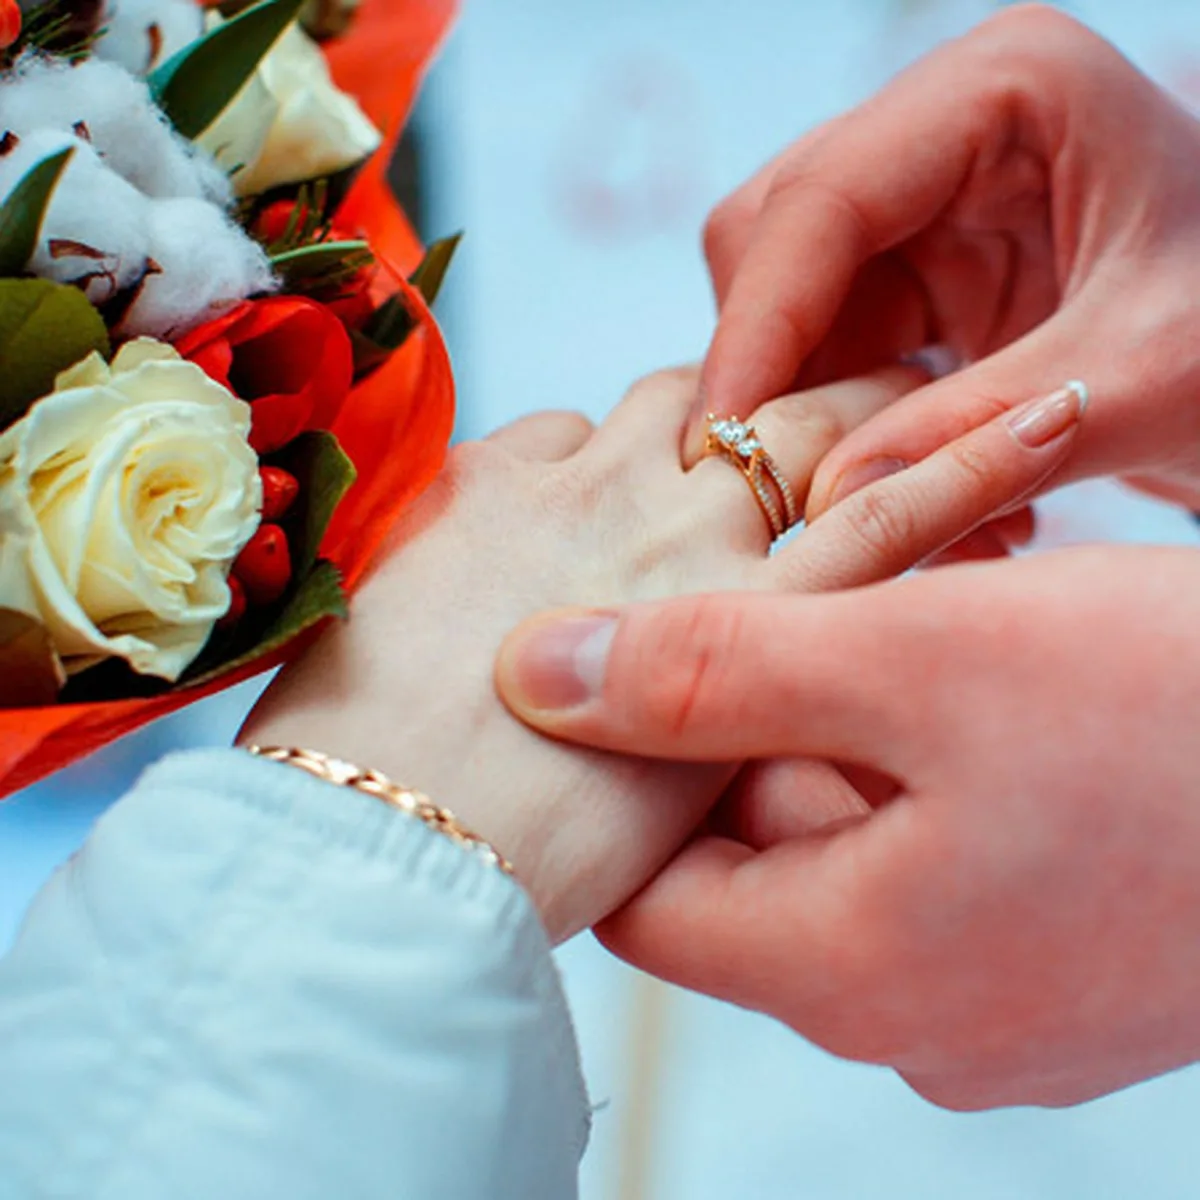 Предложения замужества. Букет с кольцом. Букет цветов с кольцом. Рука с кольцом и цветами. Предложение руки и сердца с цветами и кольцом.